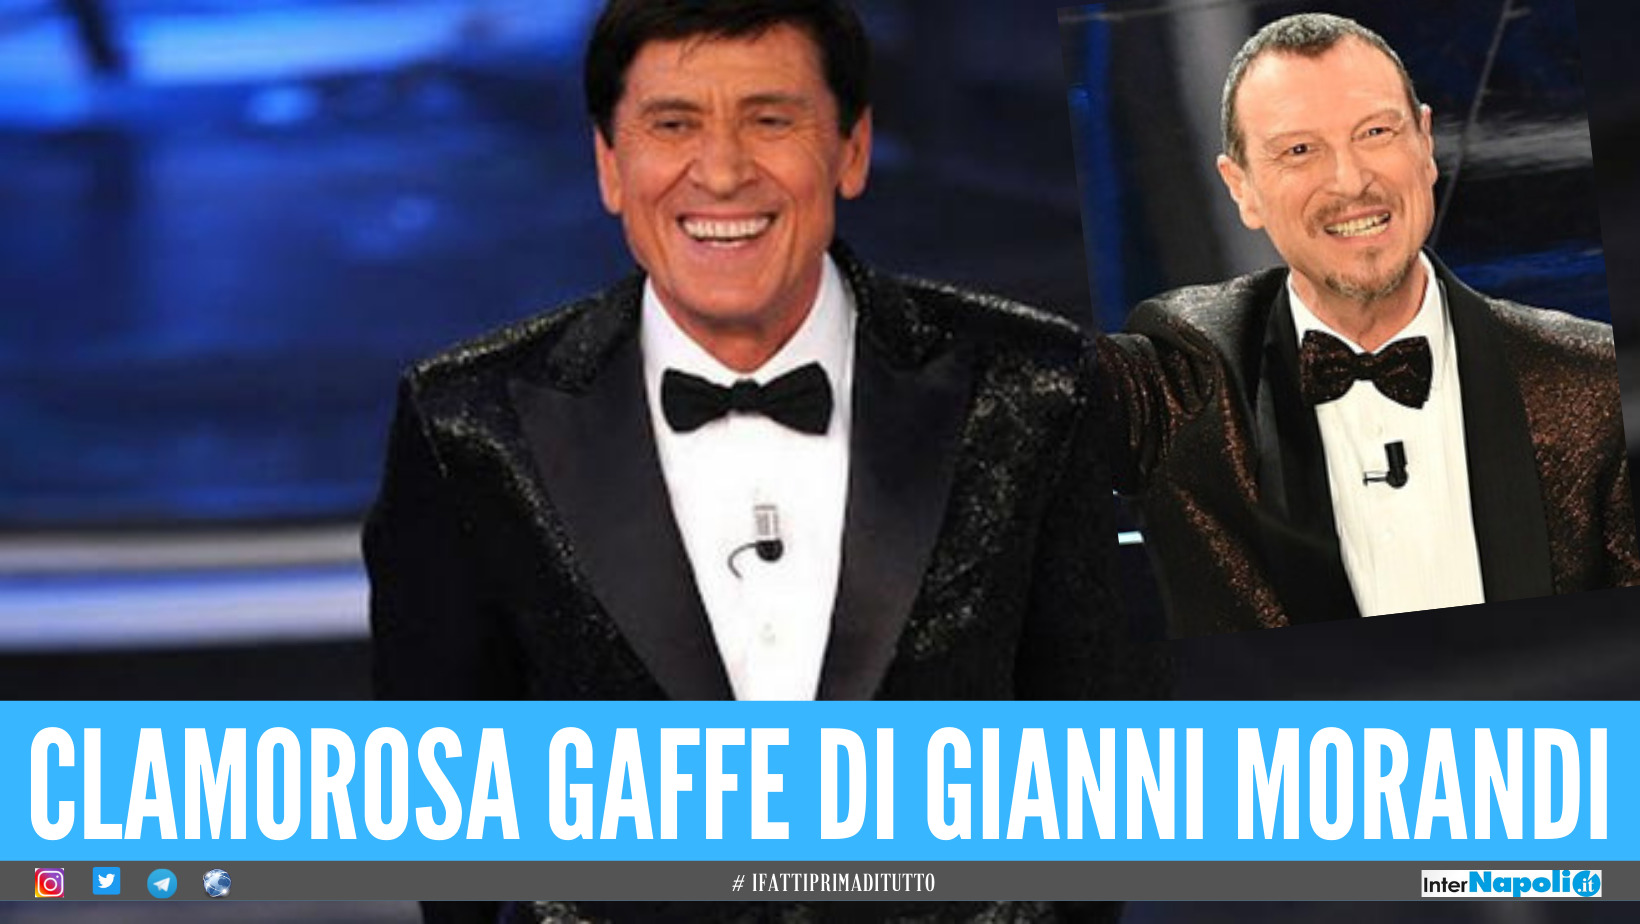 Amadeus grazia Gianni Morandi, resterà in gara a Sanremo. Il cantante chiede scusa: "L'ho fatta grossa"